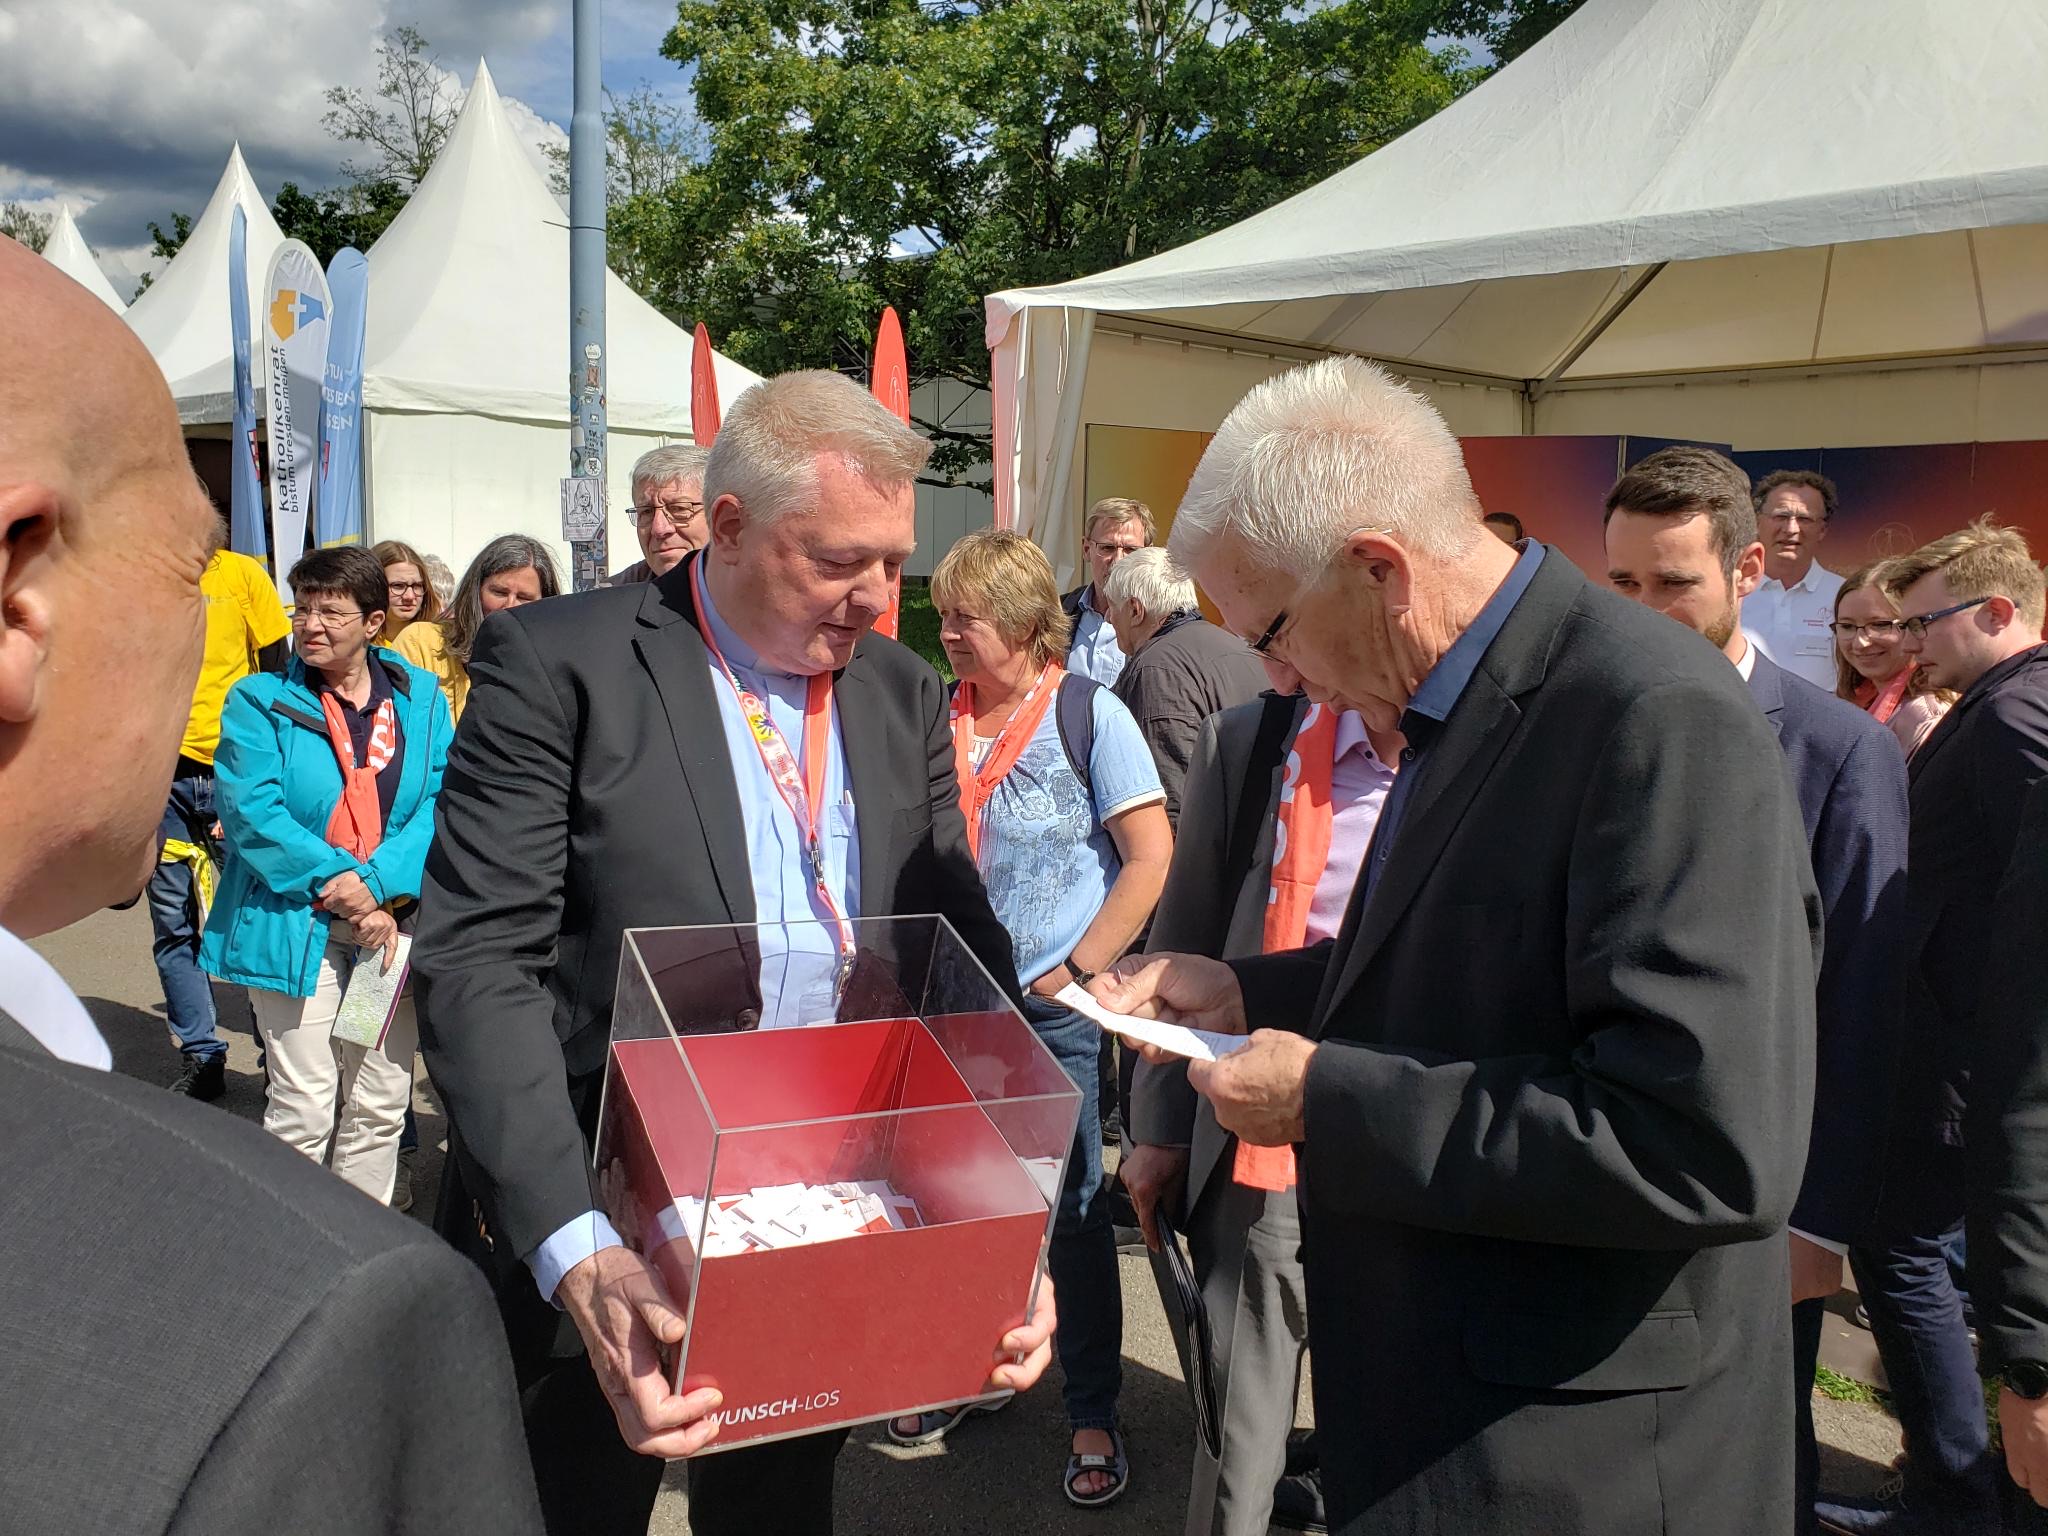 Auch Baden-Württembergs Ministerpräsident Winfried Kretschmann besuchte den Stand von Paderborn und zog ein Wunschlos aus der Box, die Msgr. Dr. Bredeck ihm reichte.